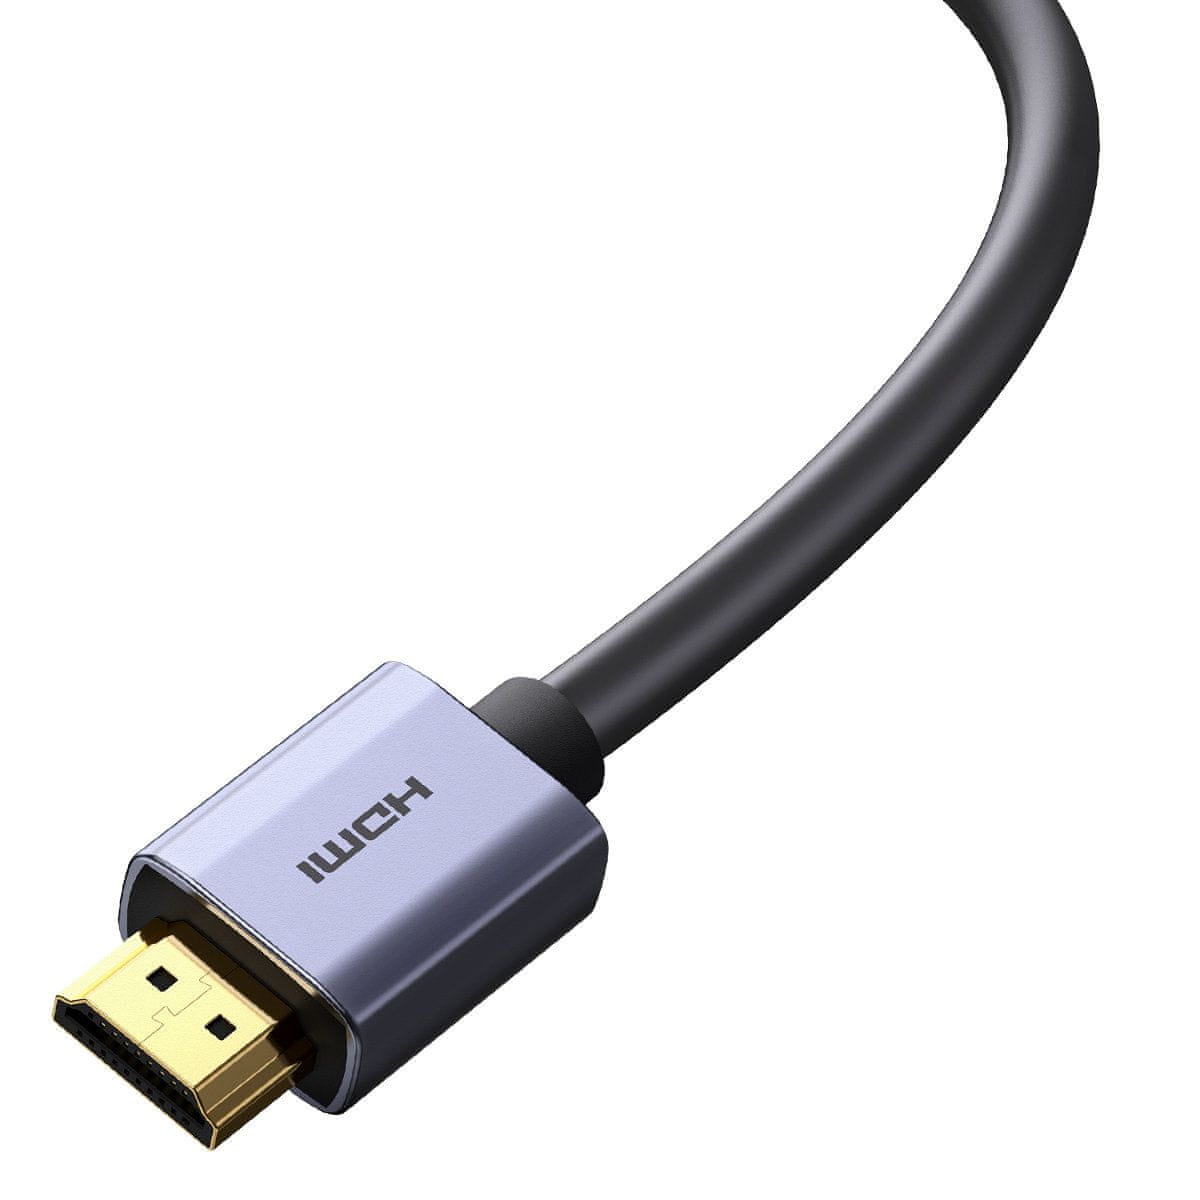 MG kábel HDMI 2.1 8K / 4K / 2K 3m, strieborný